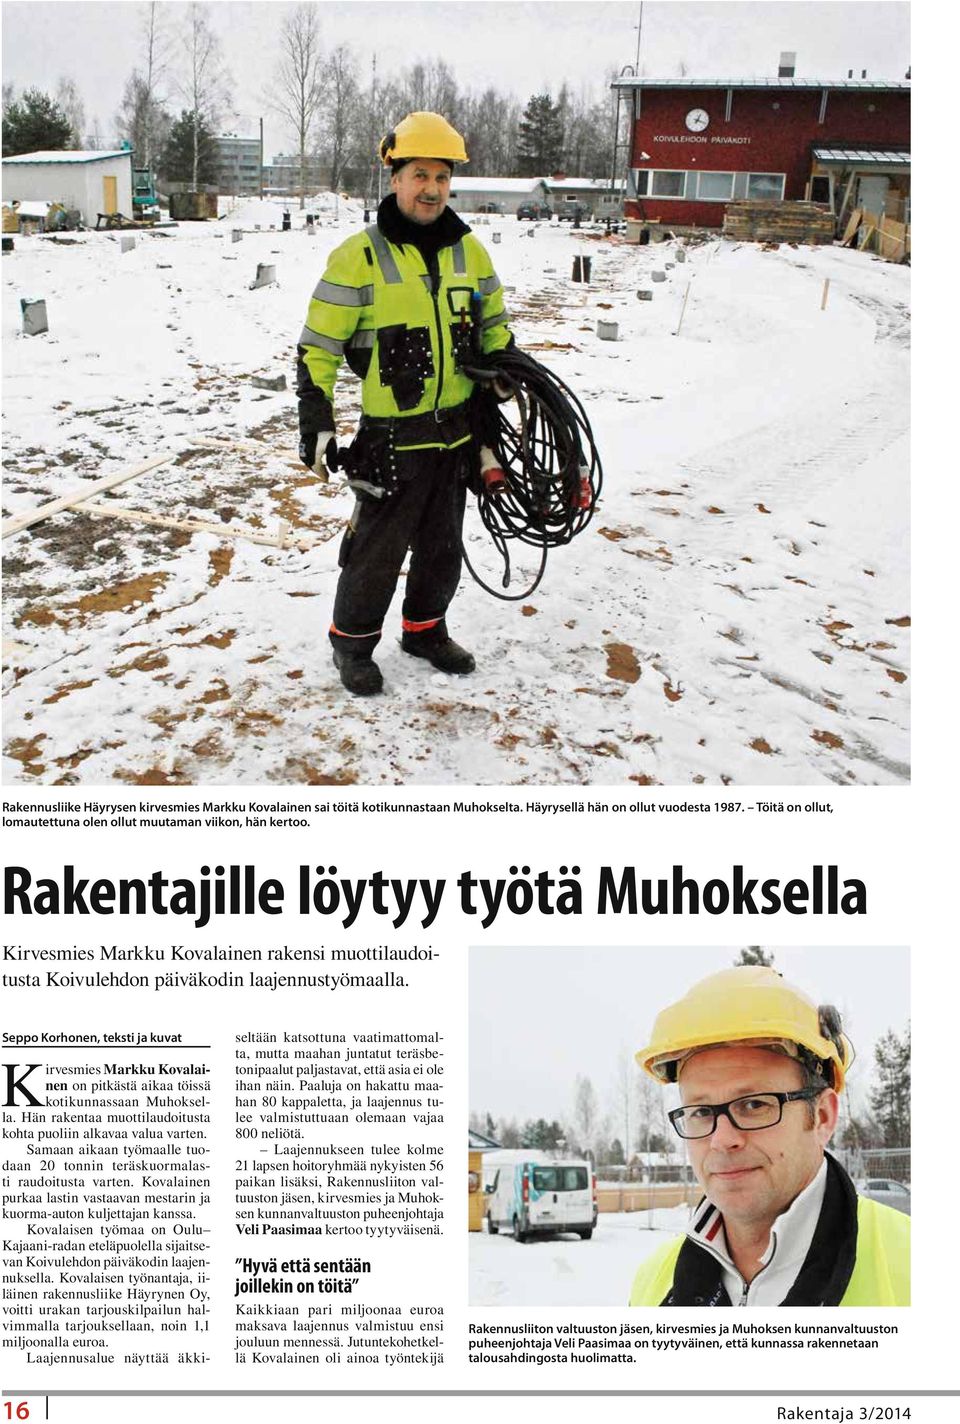 Seppo Korhonen, teksti ja kuvat Kirvesmies Markku Kovalainen on pitkästä aikaa töissä kotikunnassaan Muhoksella. Hän rakentaa muottilaudoitusta kohta puoliin alkavaa valua varten.